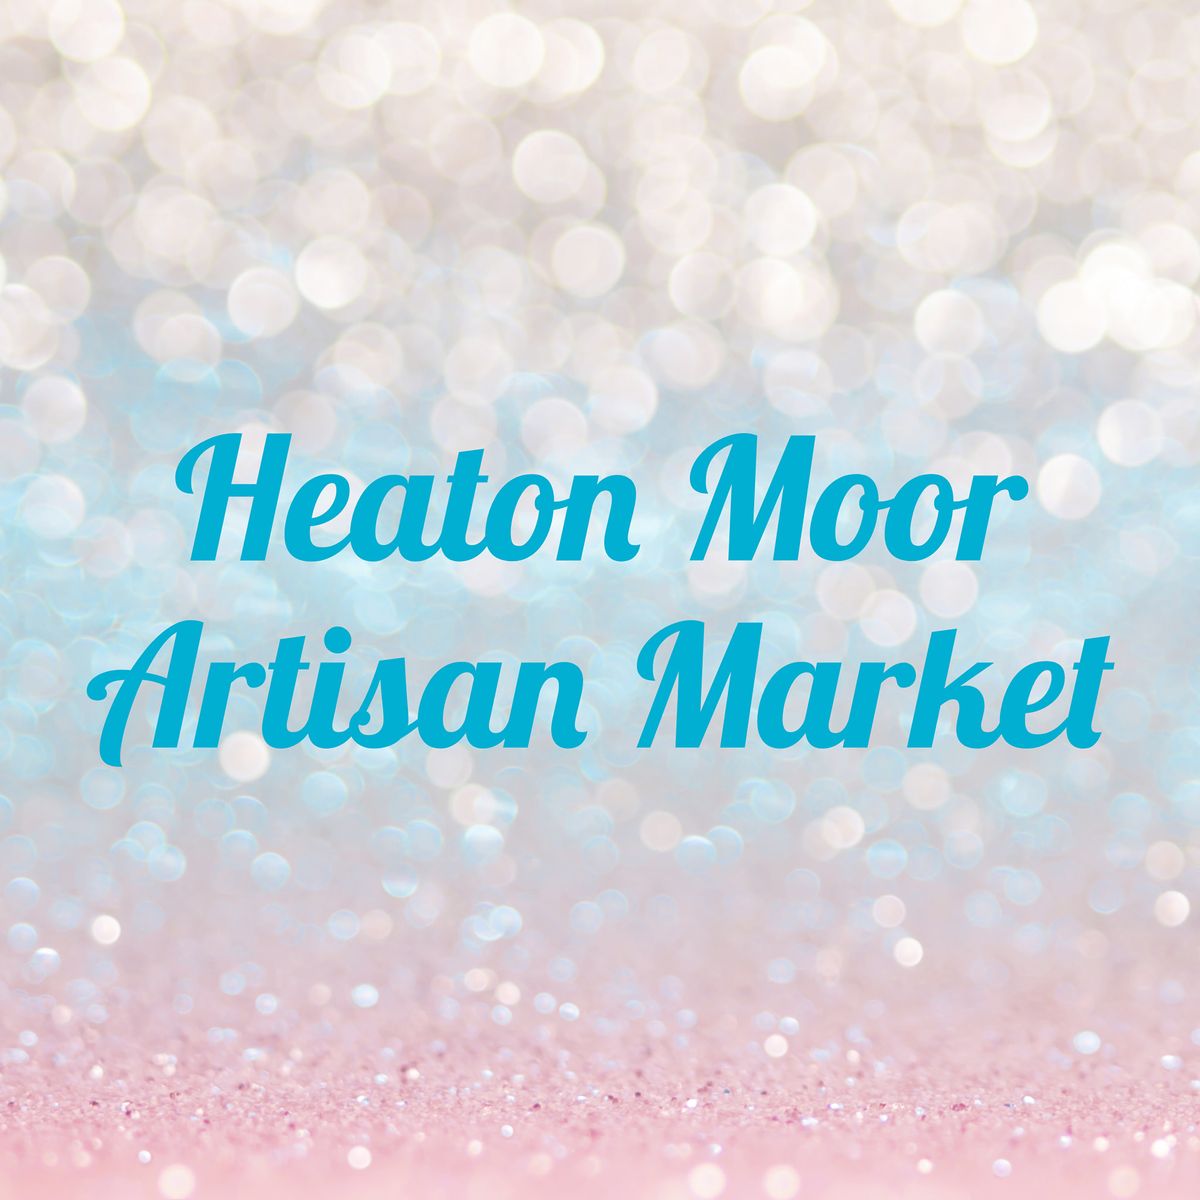 Heaton Moor Market 